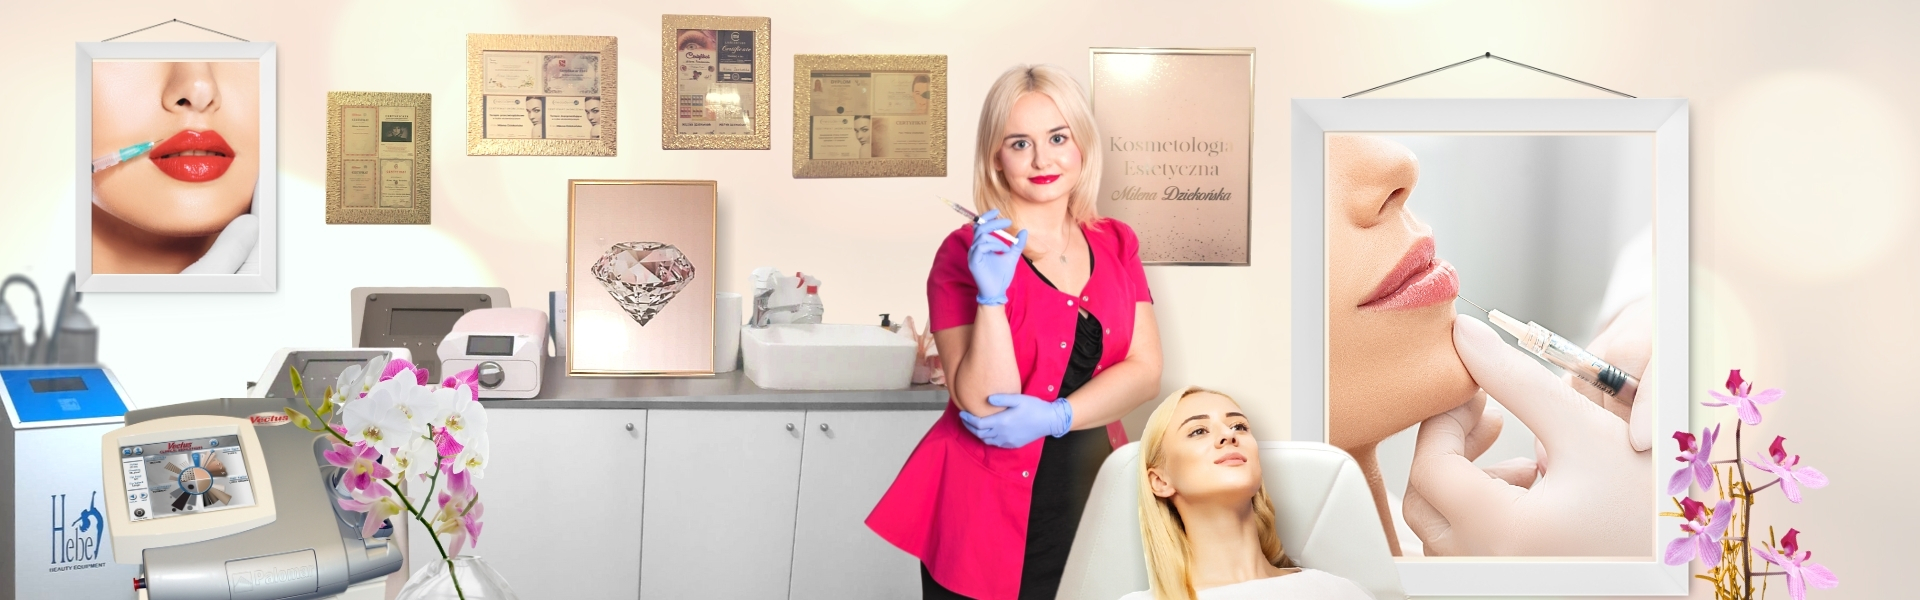 zabiegi estetyczne Łódź kosmetolog